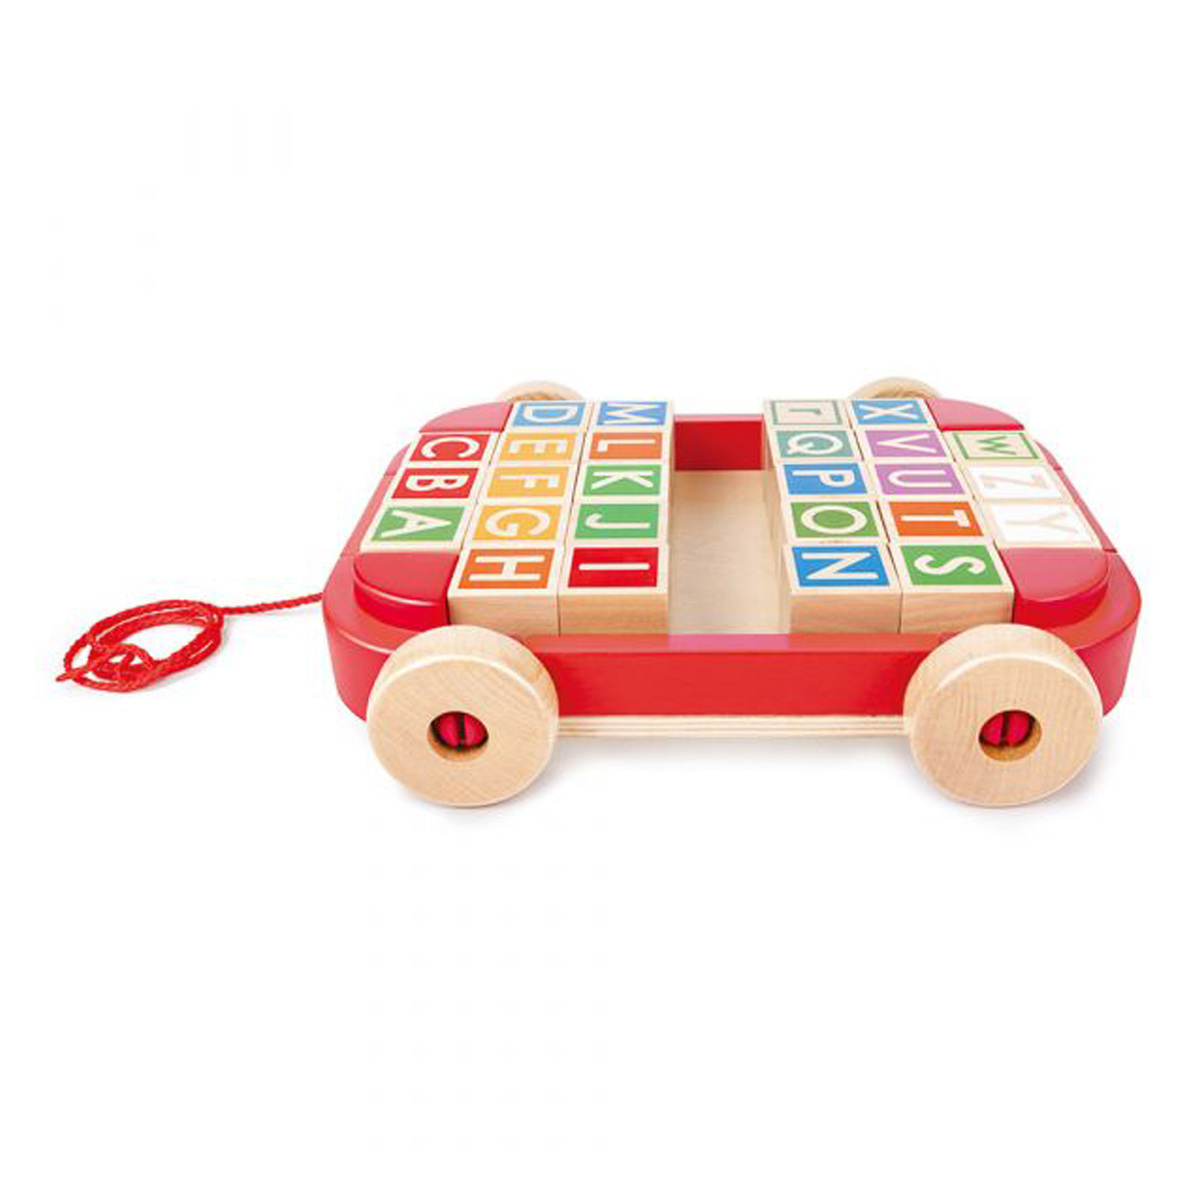 هيب مجموعة عربة قابلة للسحب مع مكعب تكديس للأطفال، E0487